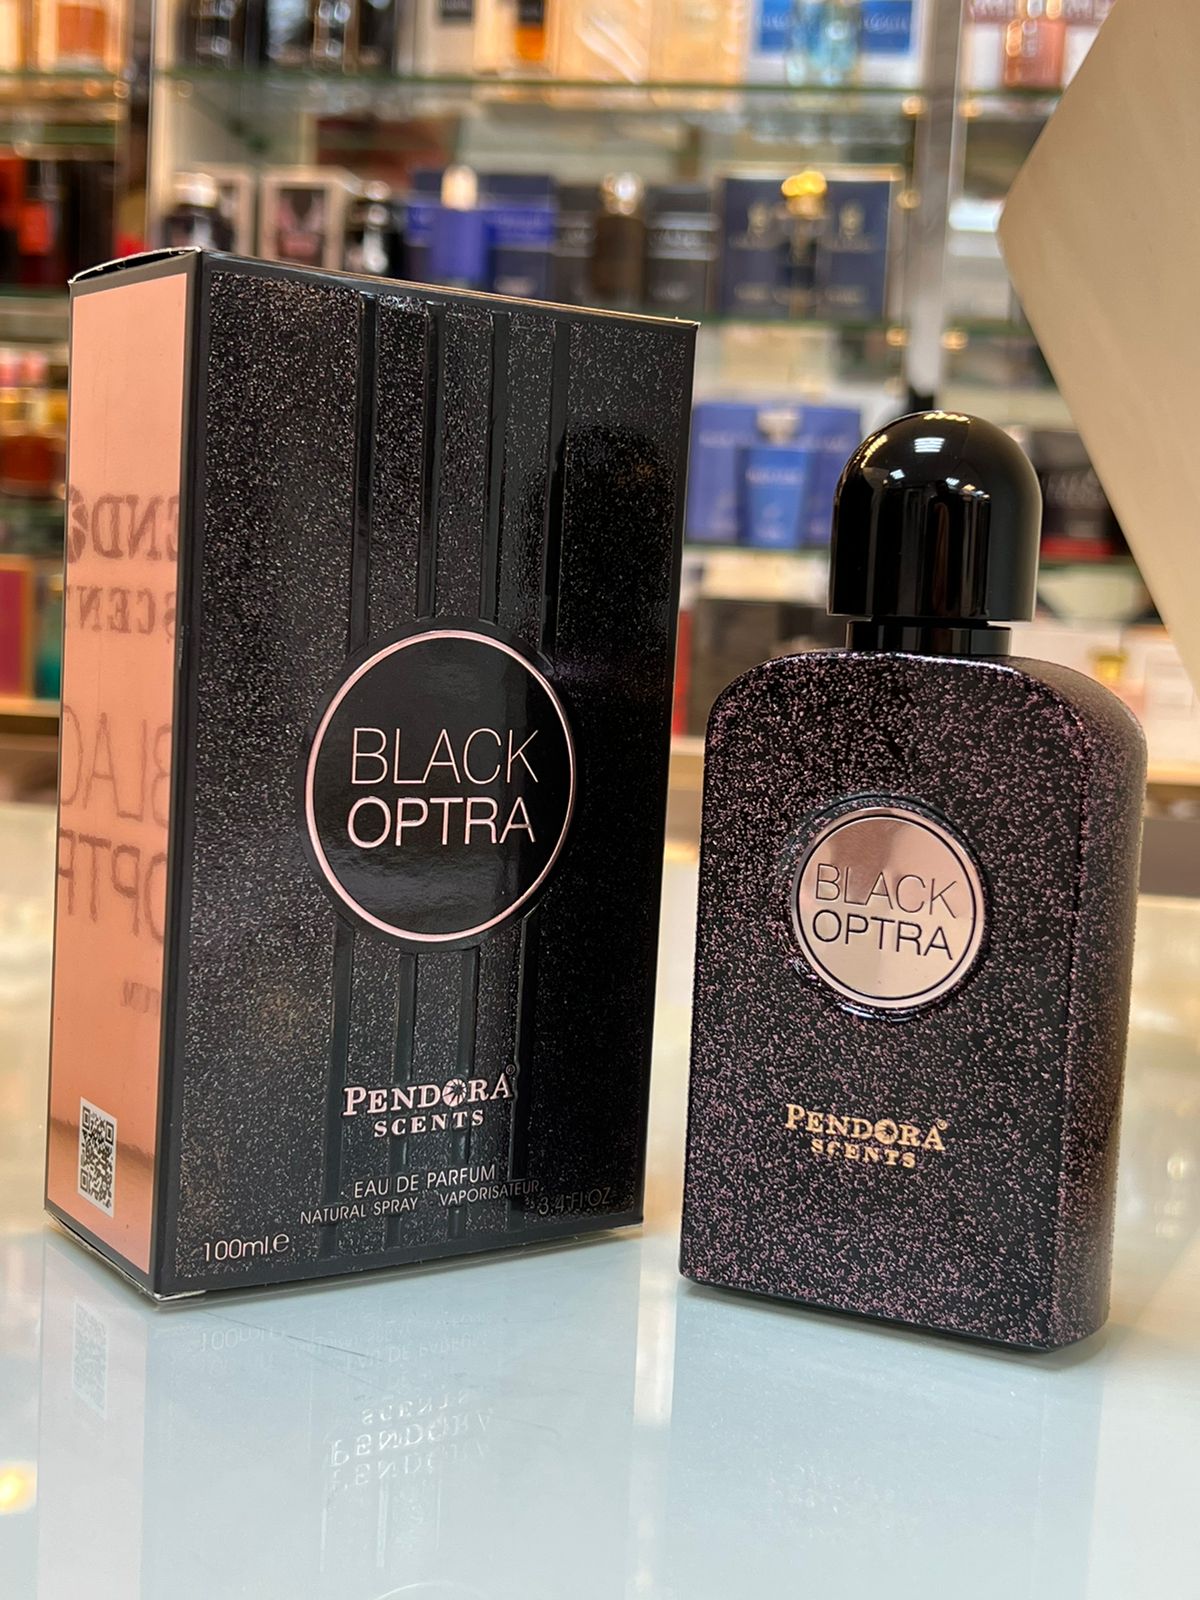 Black Optra Pendora Scents Eau De Parfum For Women 100ml By Paris Corner